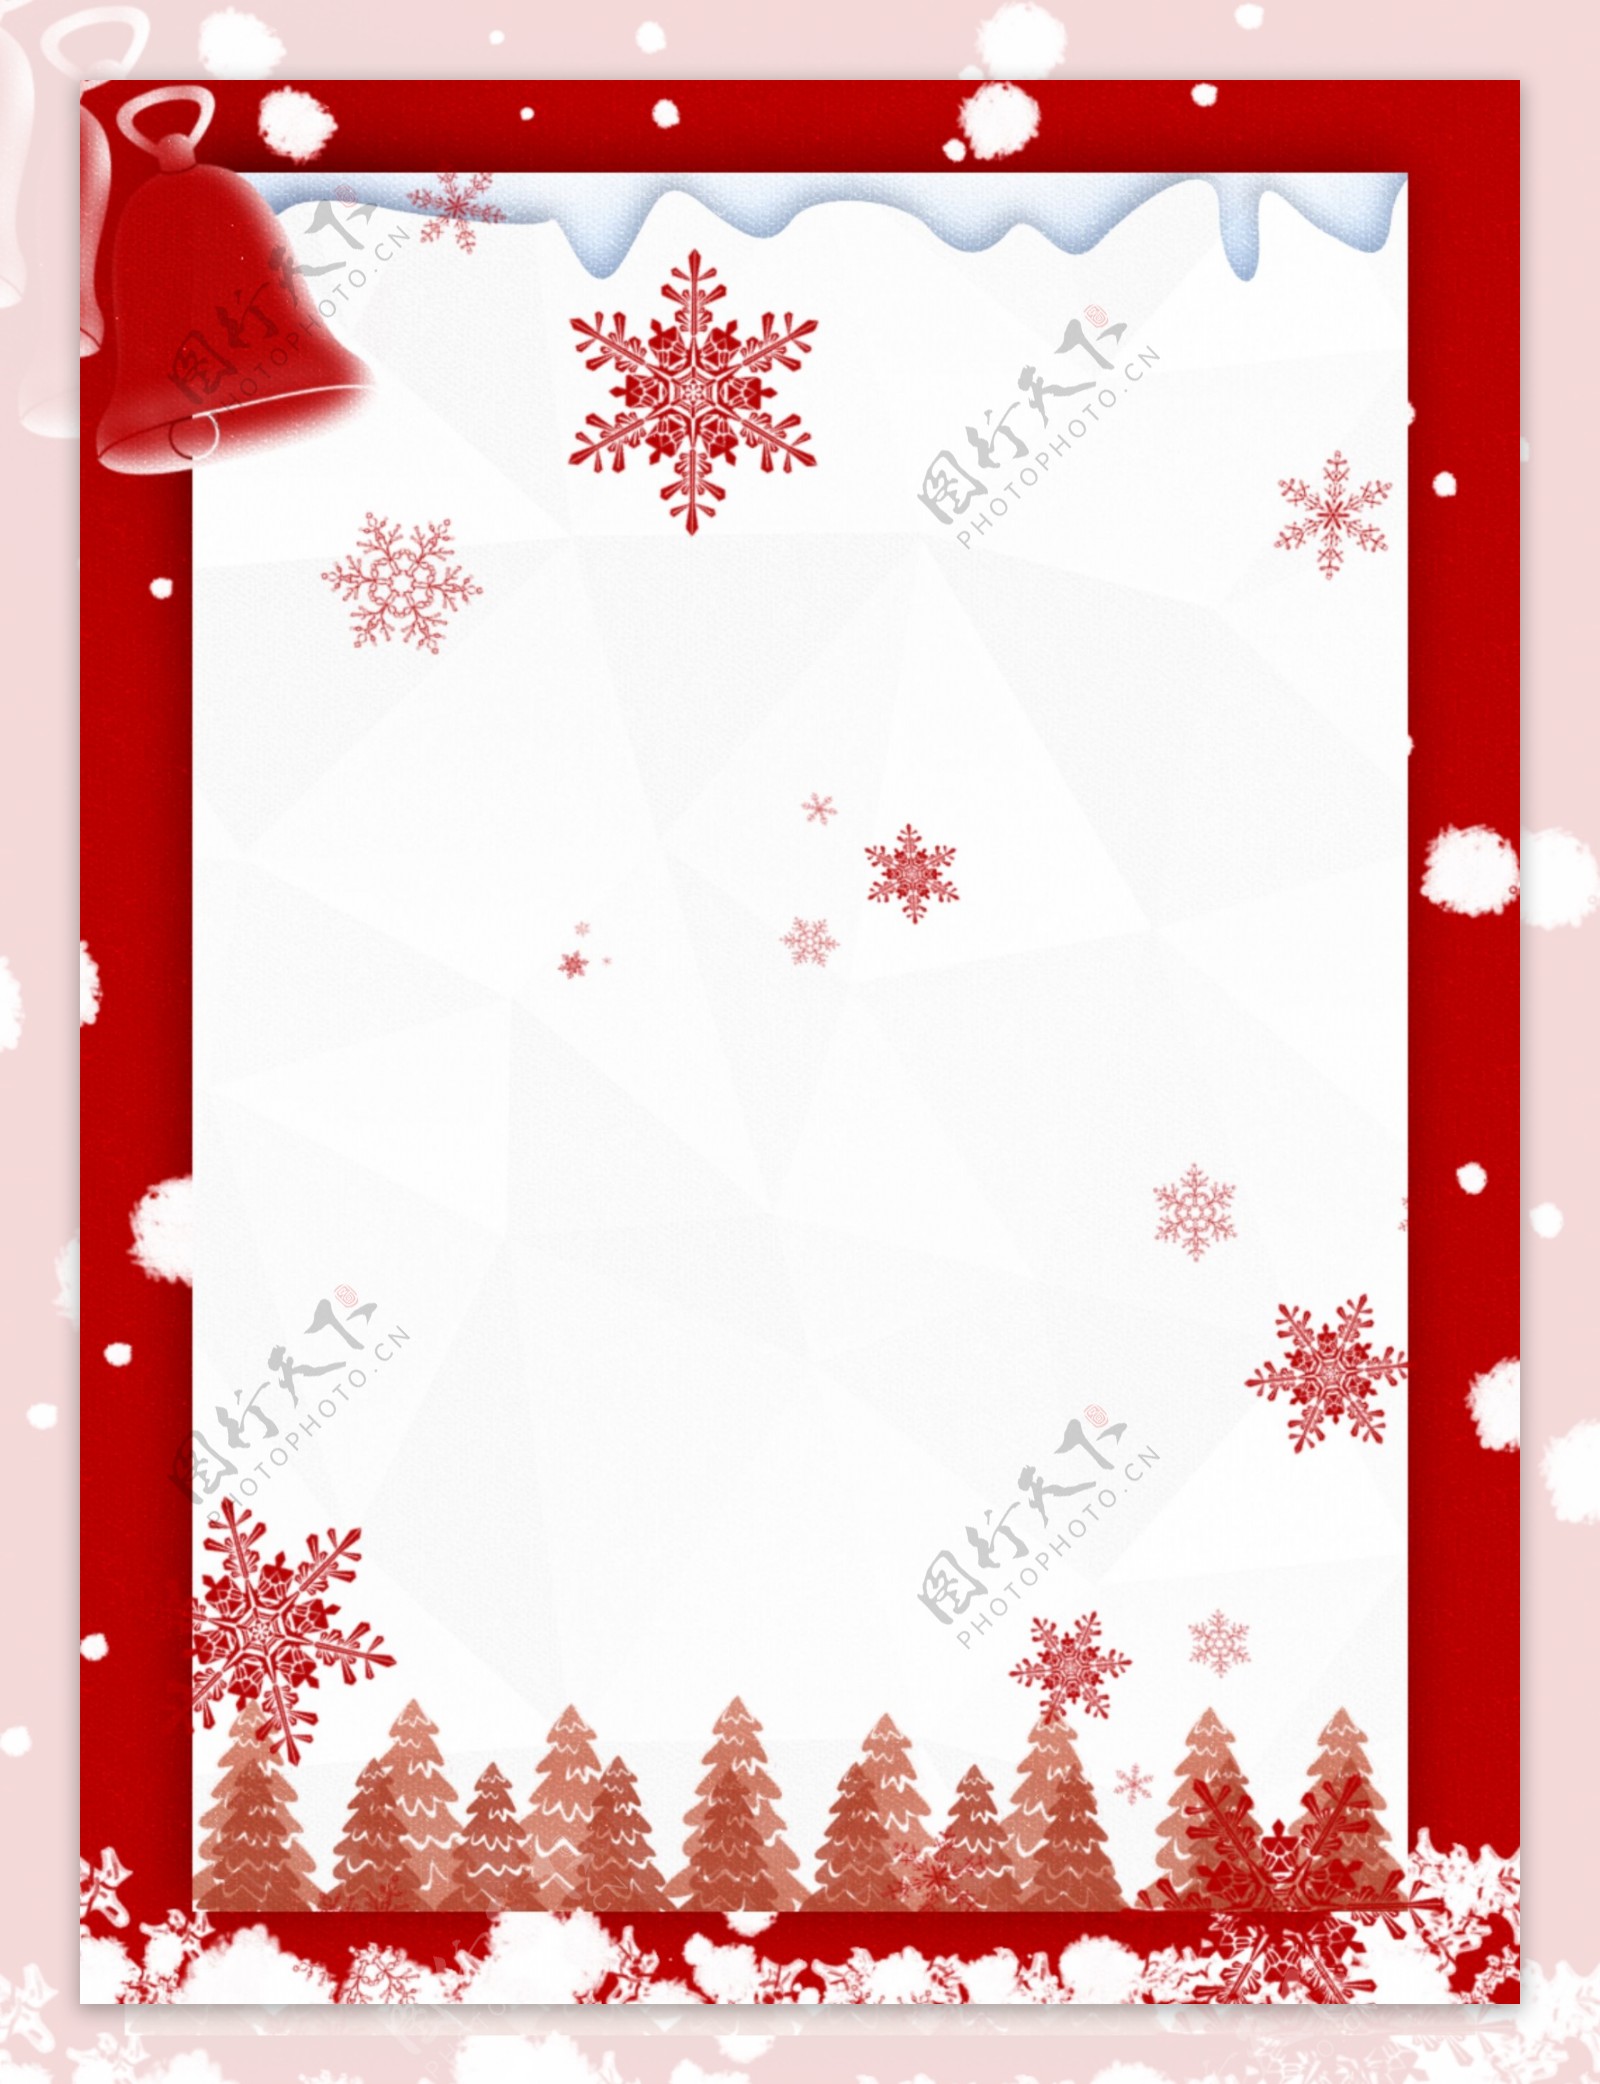 原创红色树林圣诞节卡纸雪花背景